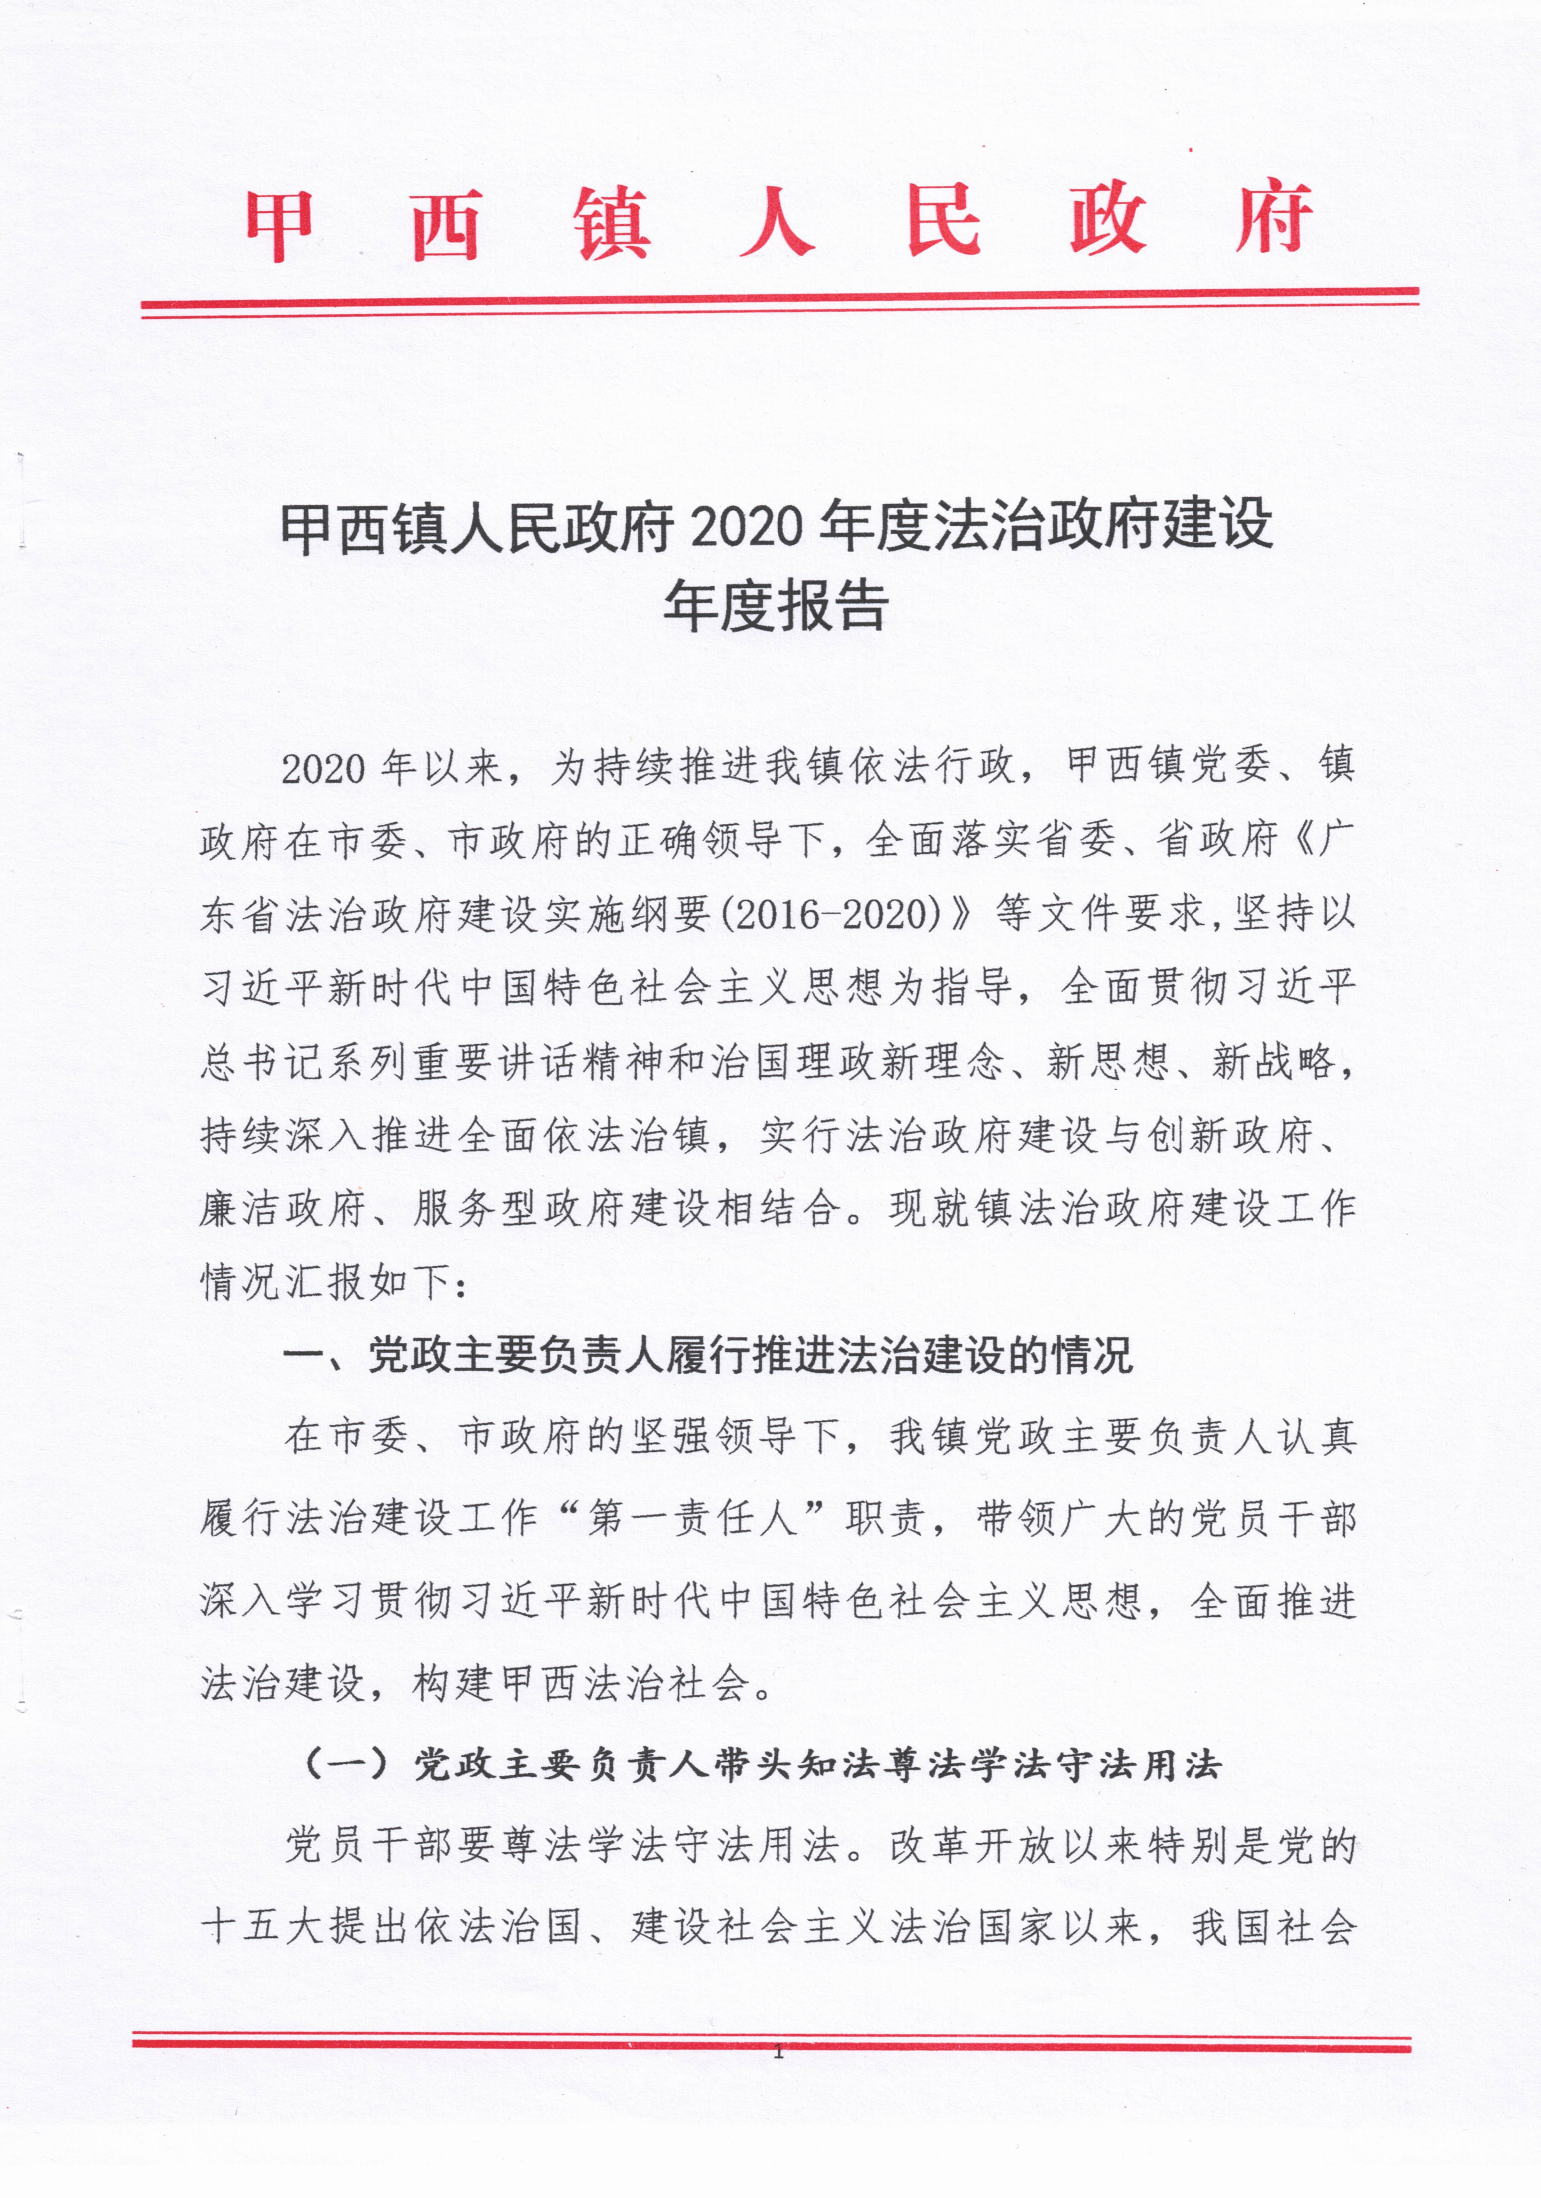 甲西镇人民政府2020年度法治政府建设年度报告_00.png